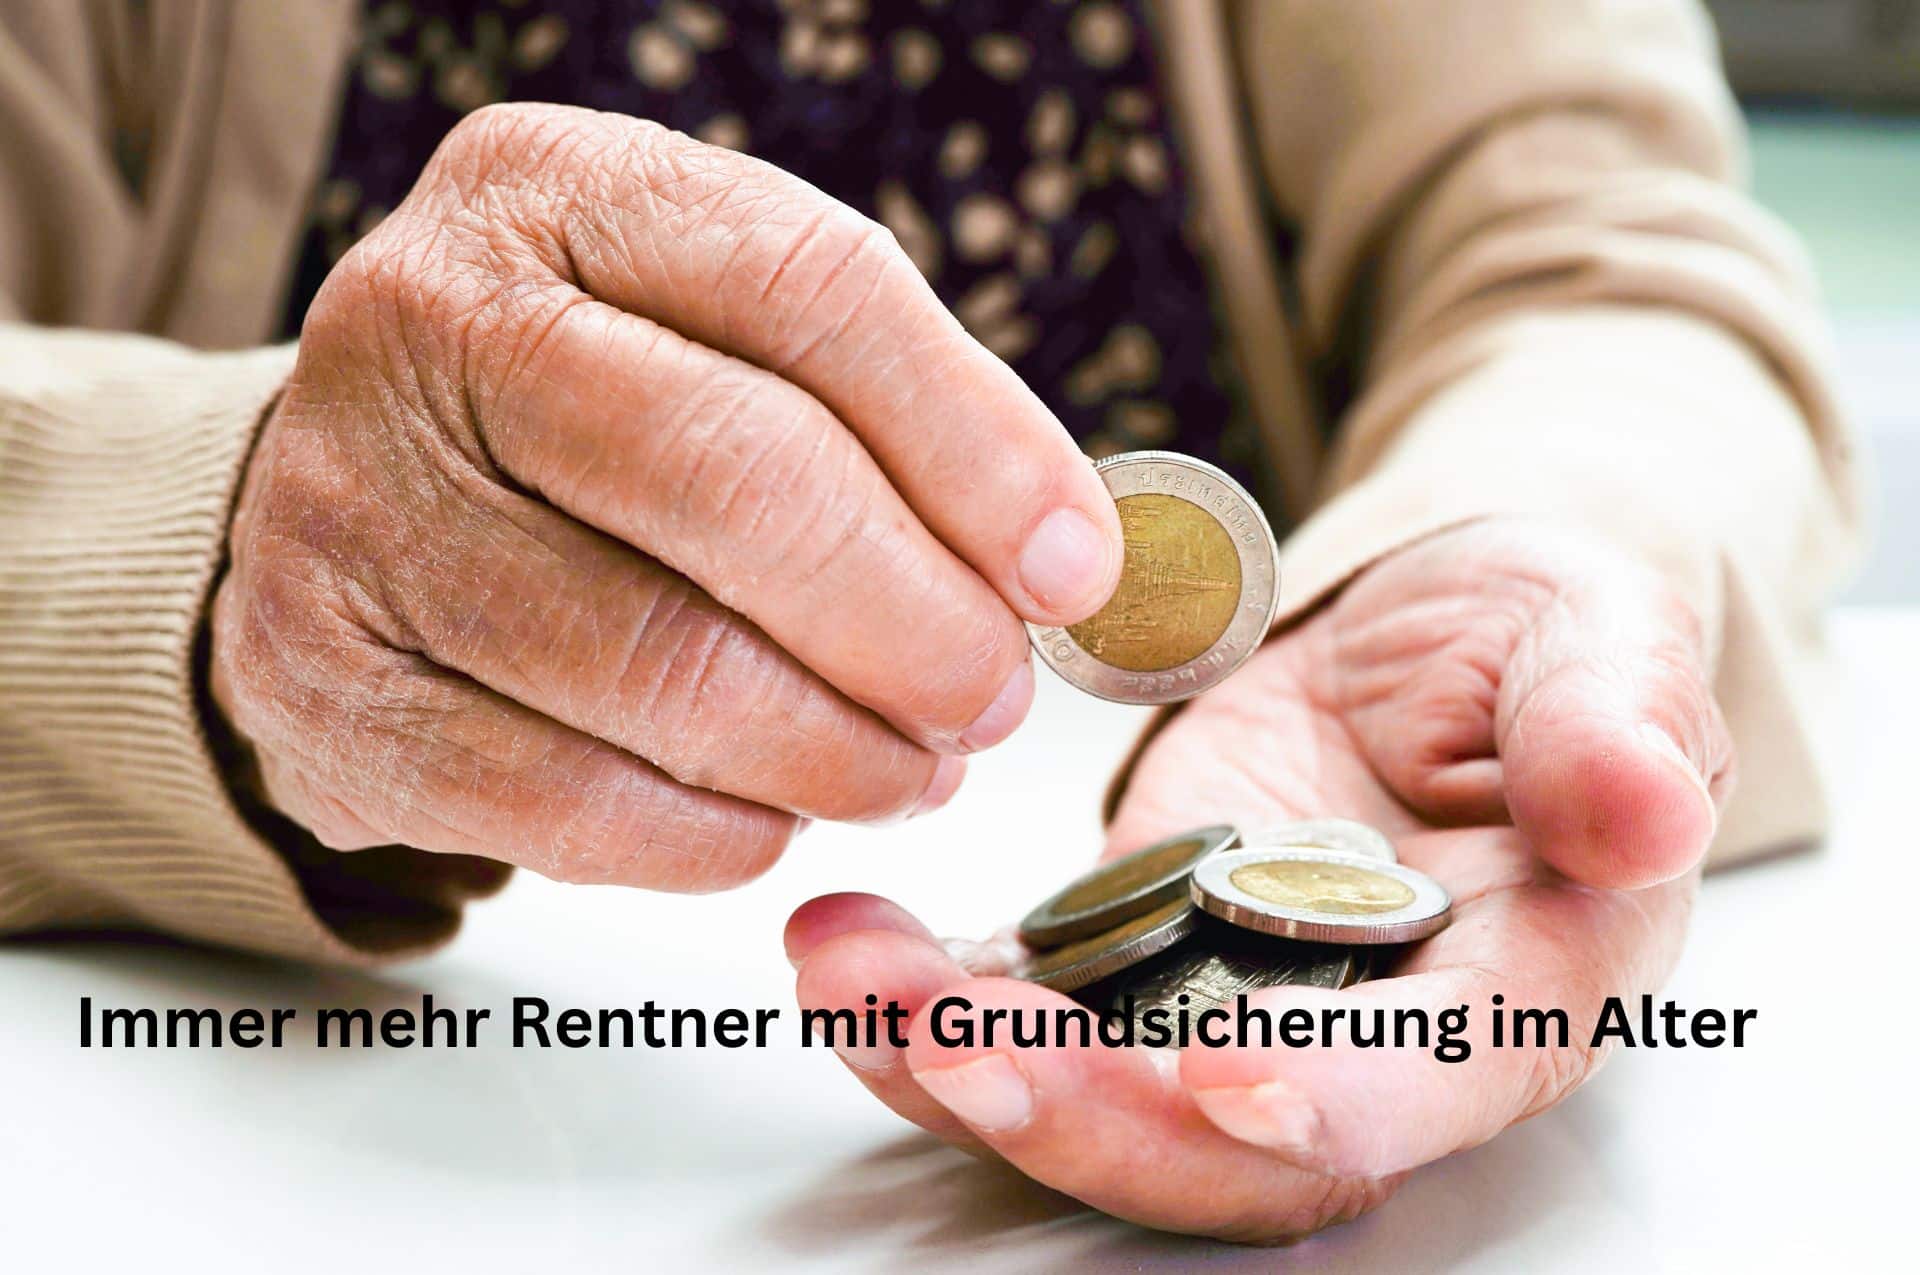 Mehr Rentner beziehen Grundsicherung im Alter - dank des Grundrenten-Freibetrags.